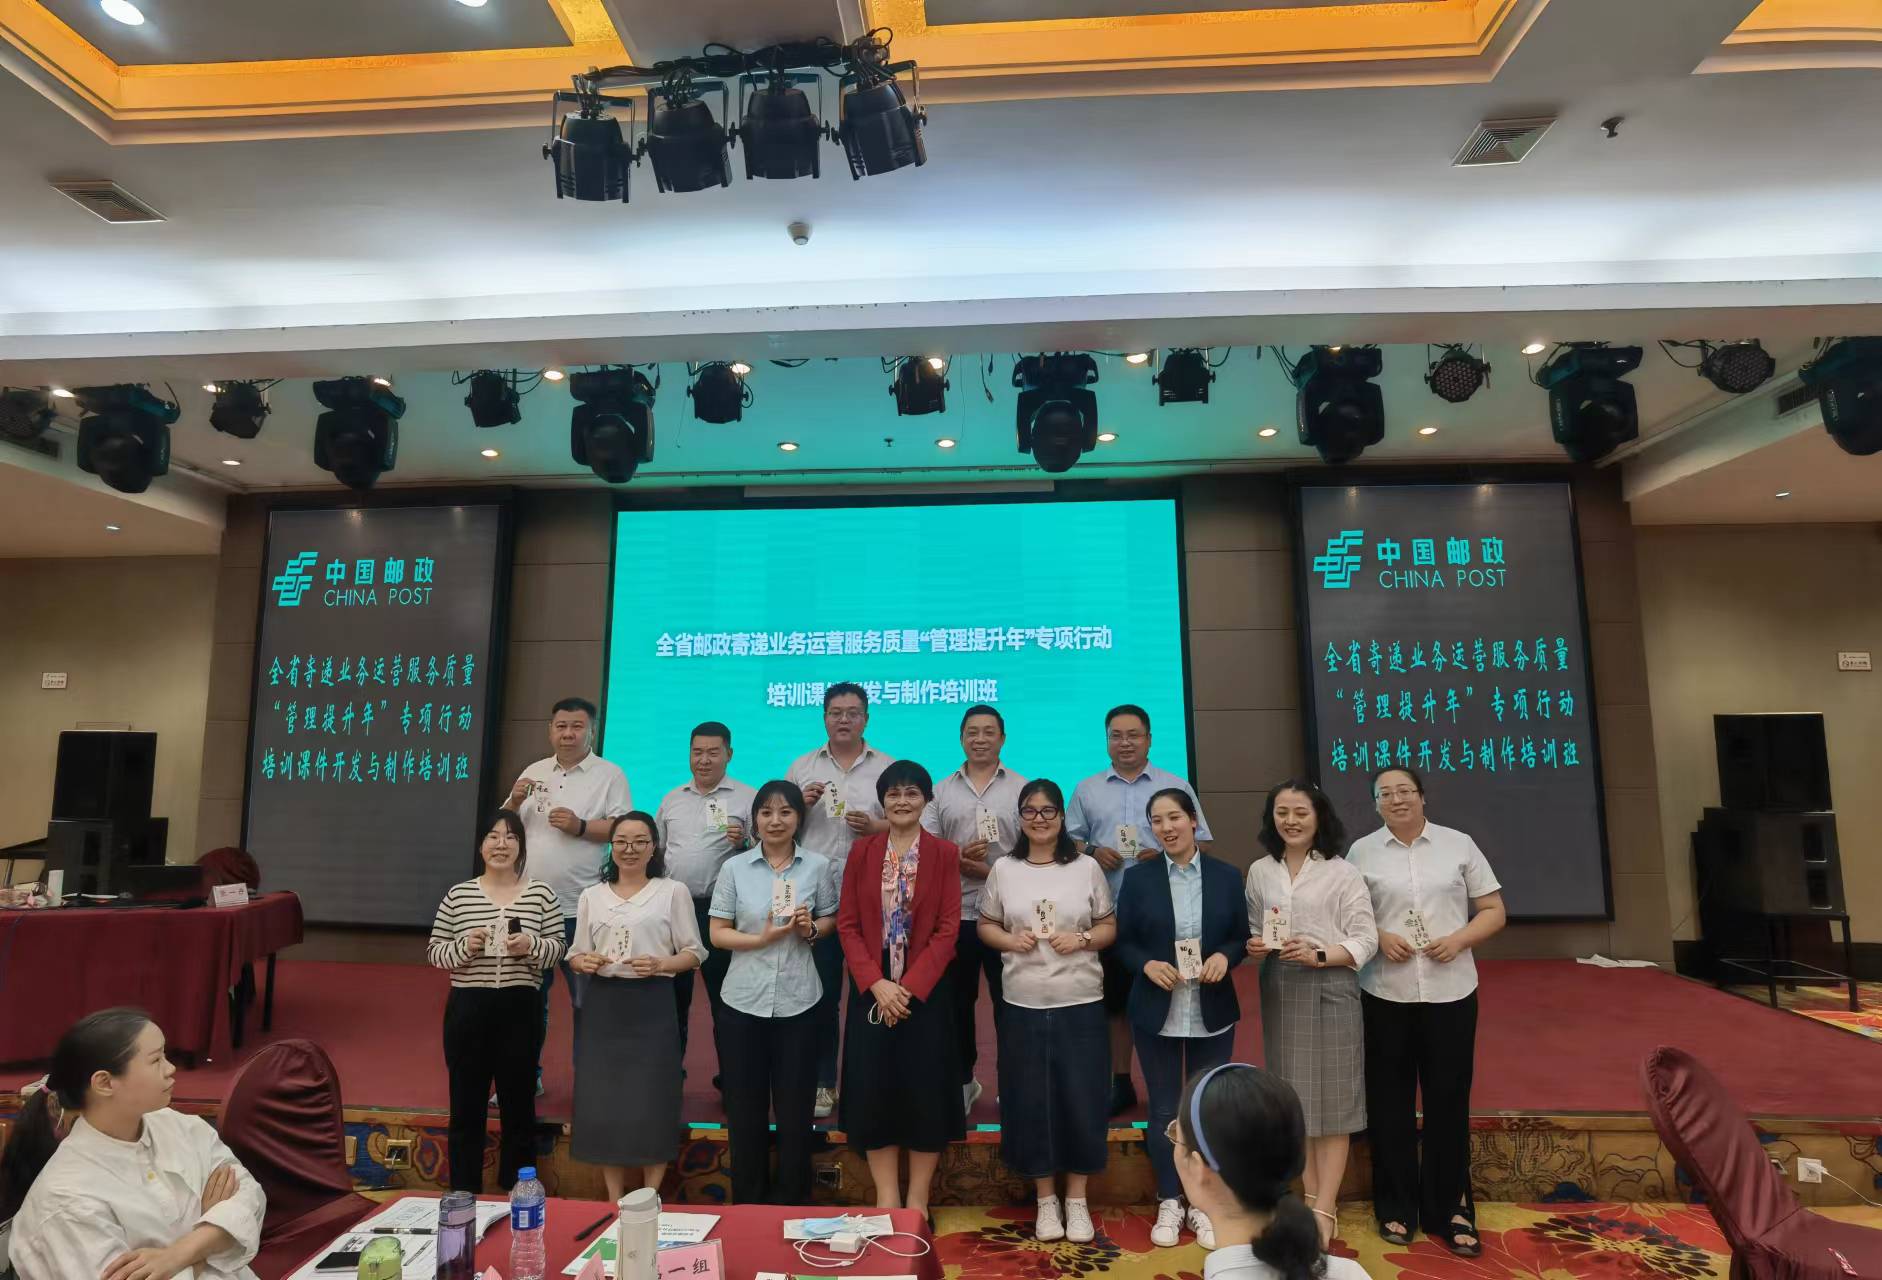 2022年6月19-24张一丹老师为中国邮政培训《课程开发与授课技巧》圆满结束！